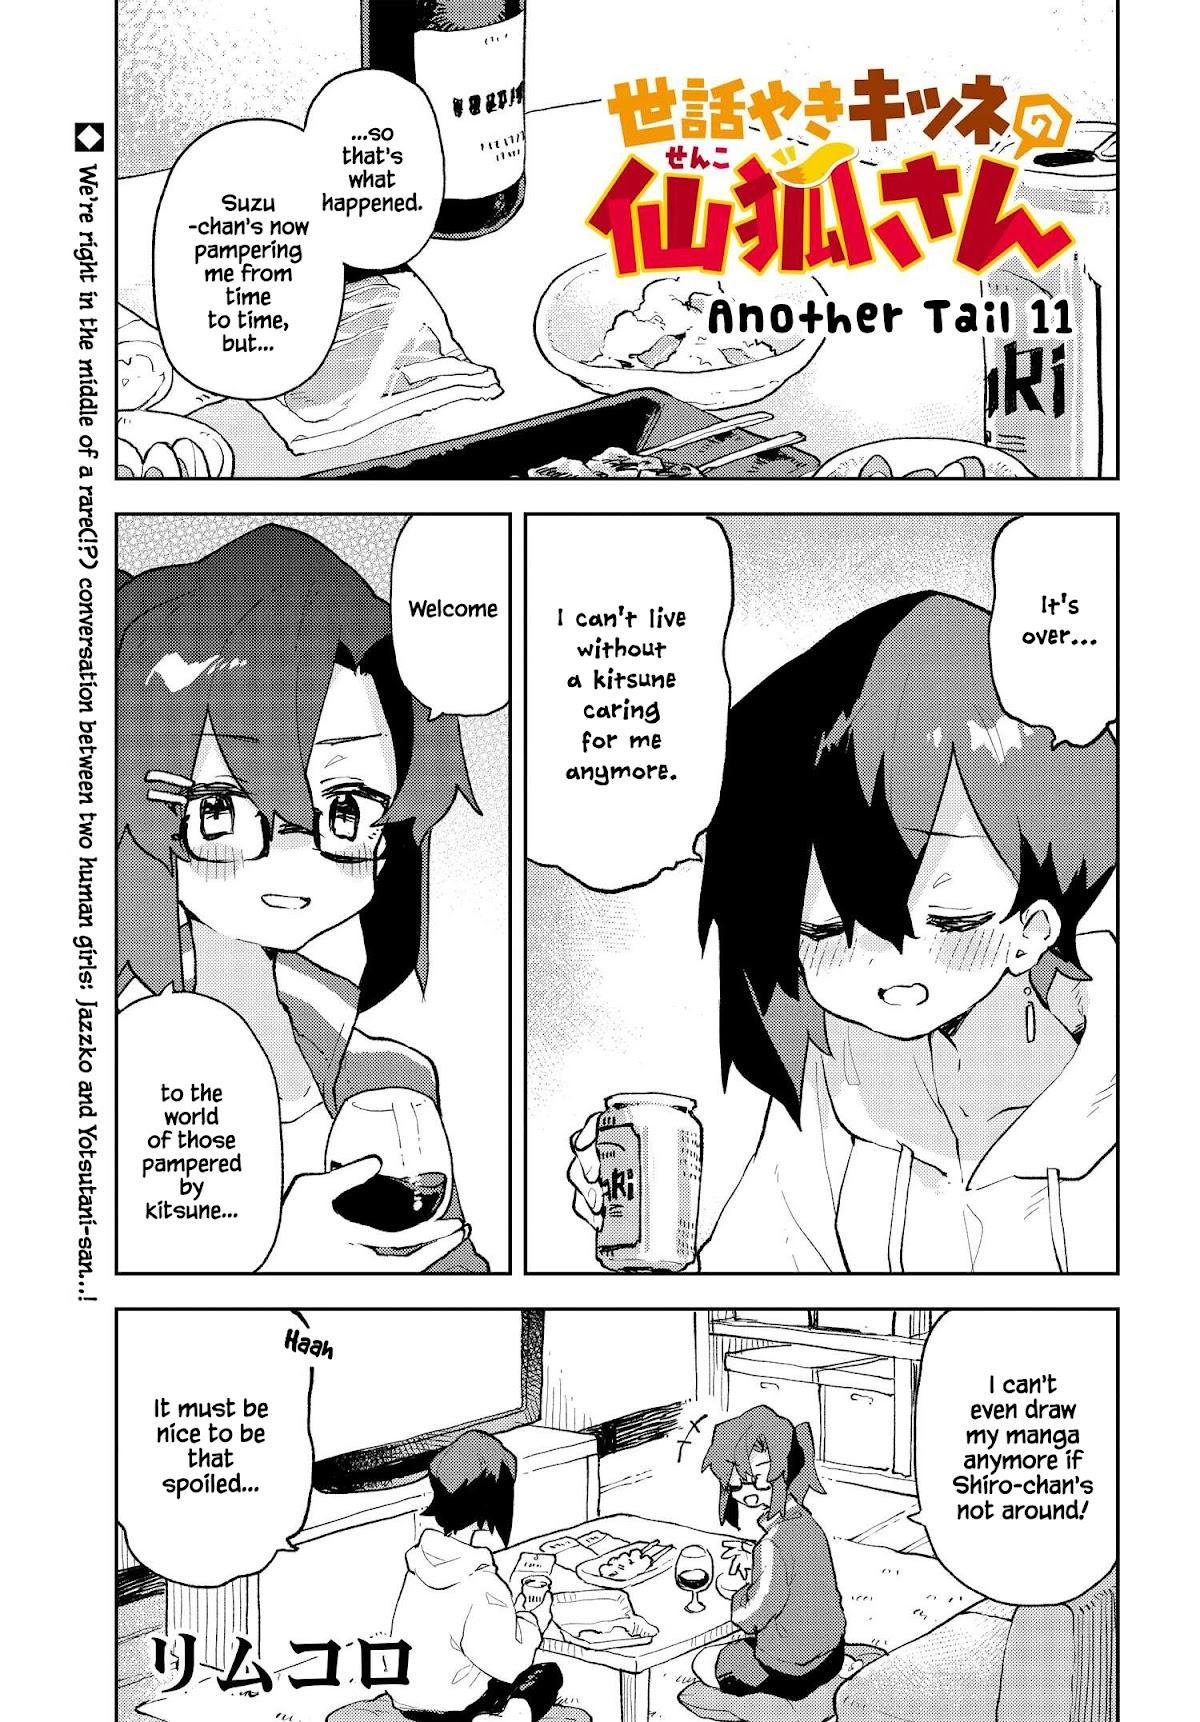 Sewayaki Kitsune No Senko-San Chapter 82.5: Another Tail 11 page 1 - Mangakakalot